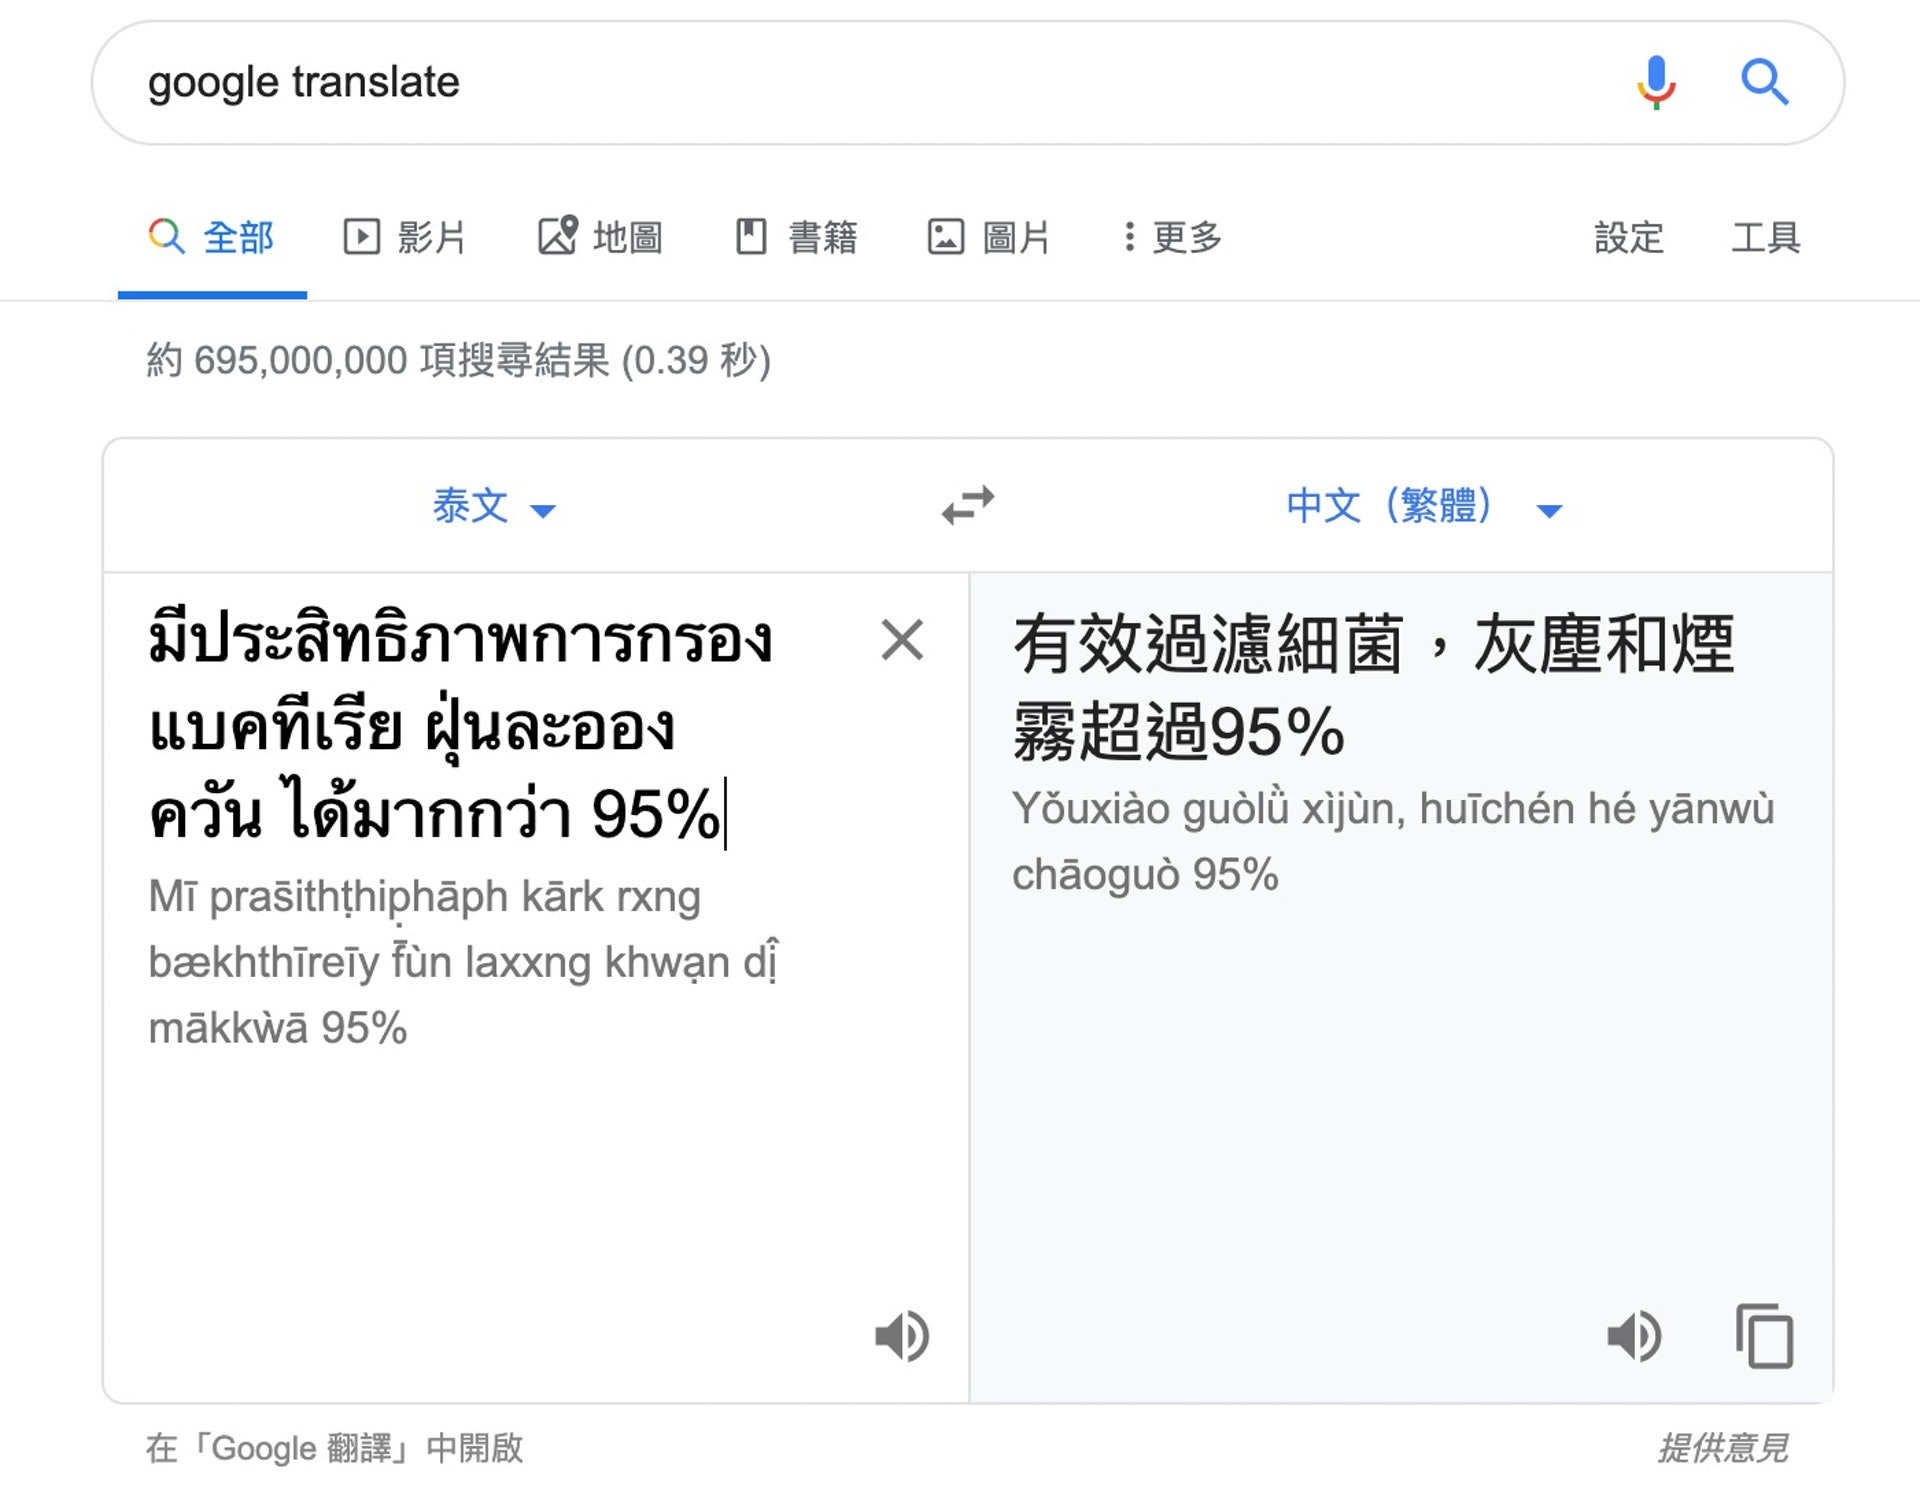 因為有不少貨品都是以泰文解說，請善用Google Translate（網上截圖）